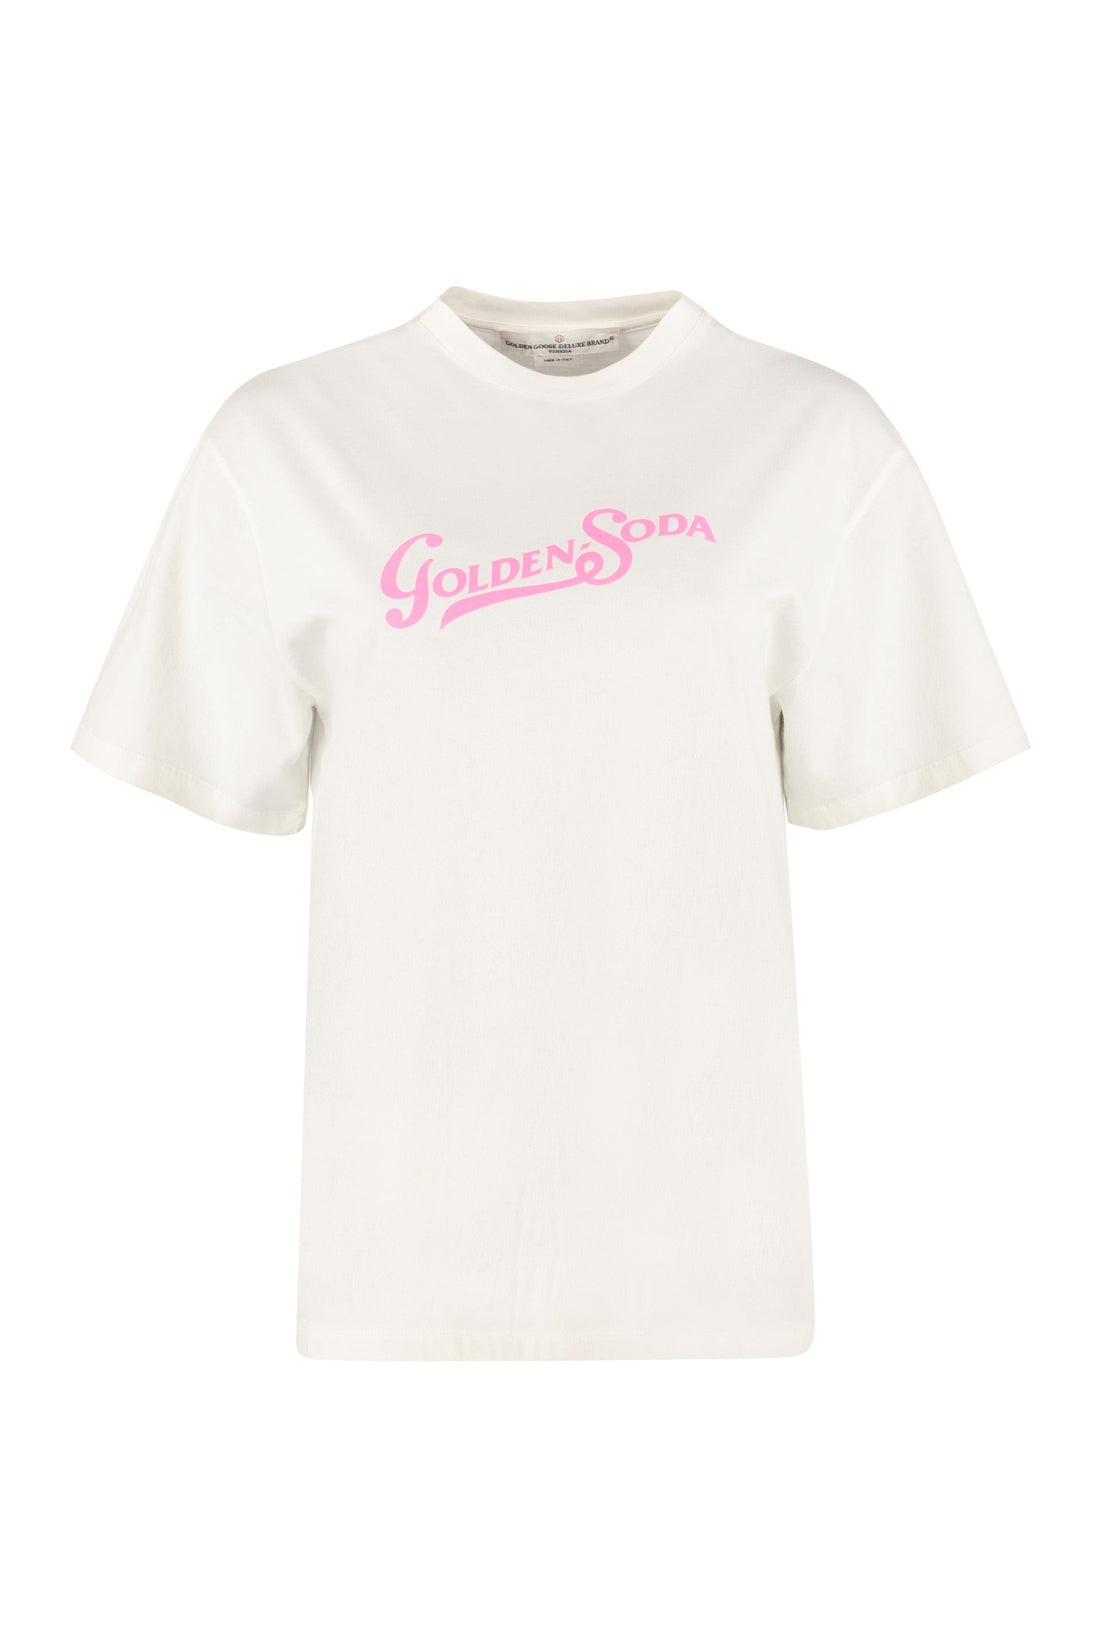 Golden Goose-OUTLET-SALE-Printed cotton t-shirt-ARCHIVIST